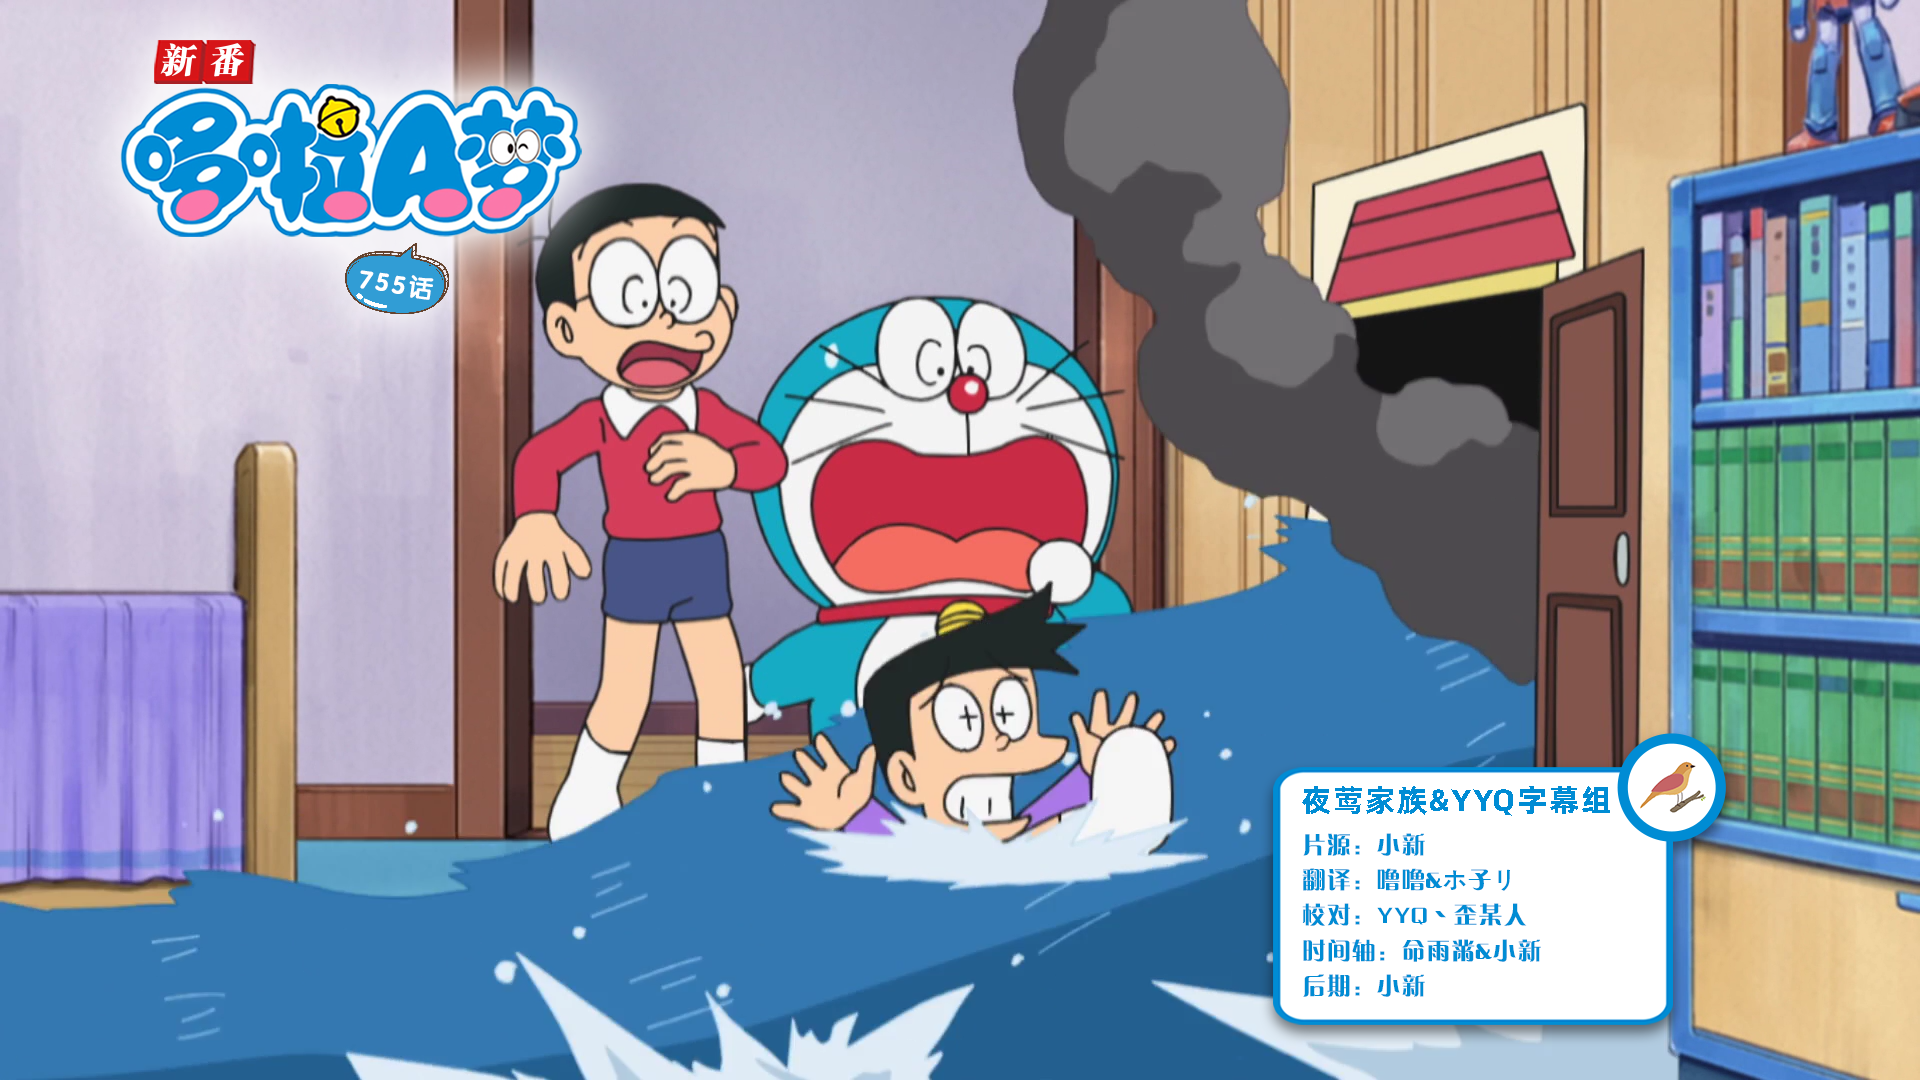 [夜莺家族&YYQ字幕组]New Doraemon 哆啦A梦新番[755][2023.04.22][AVC][1080P][GB_JP]插图icecomic动漫-云之彼端,约定的地方(´･ᴗ･`)2